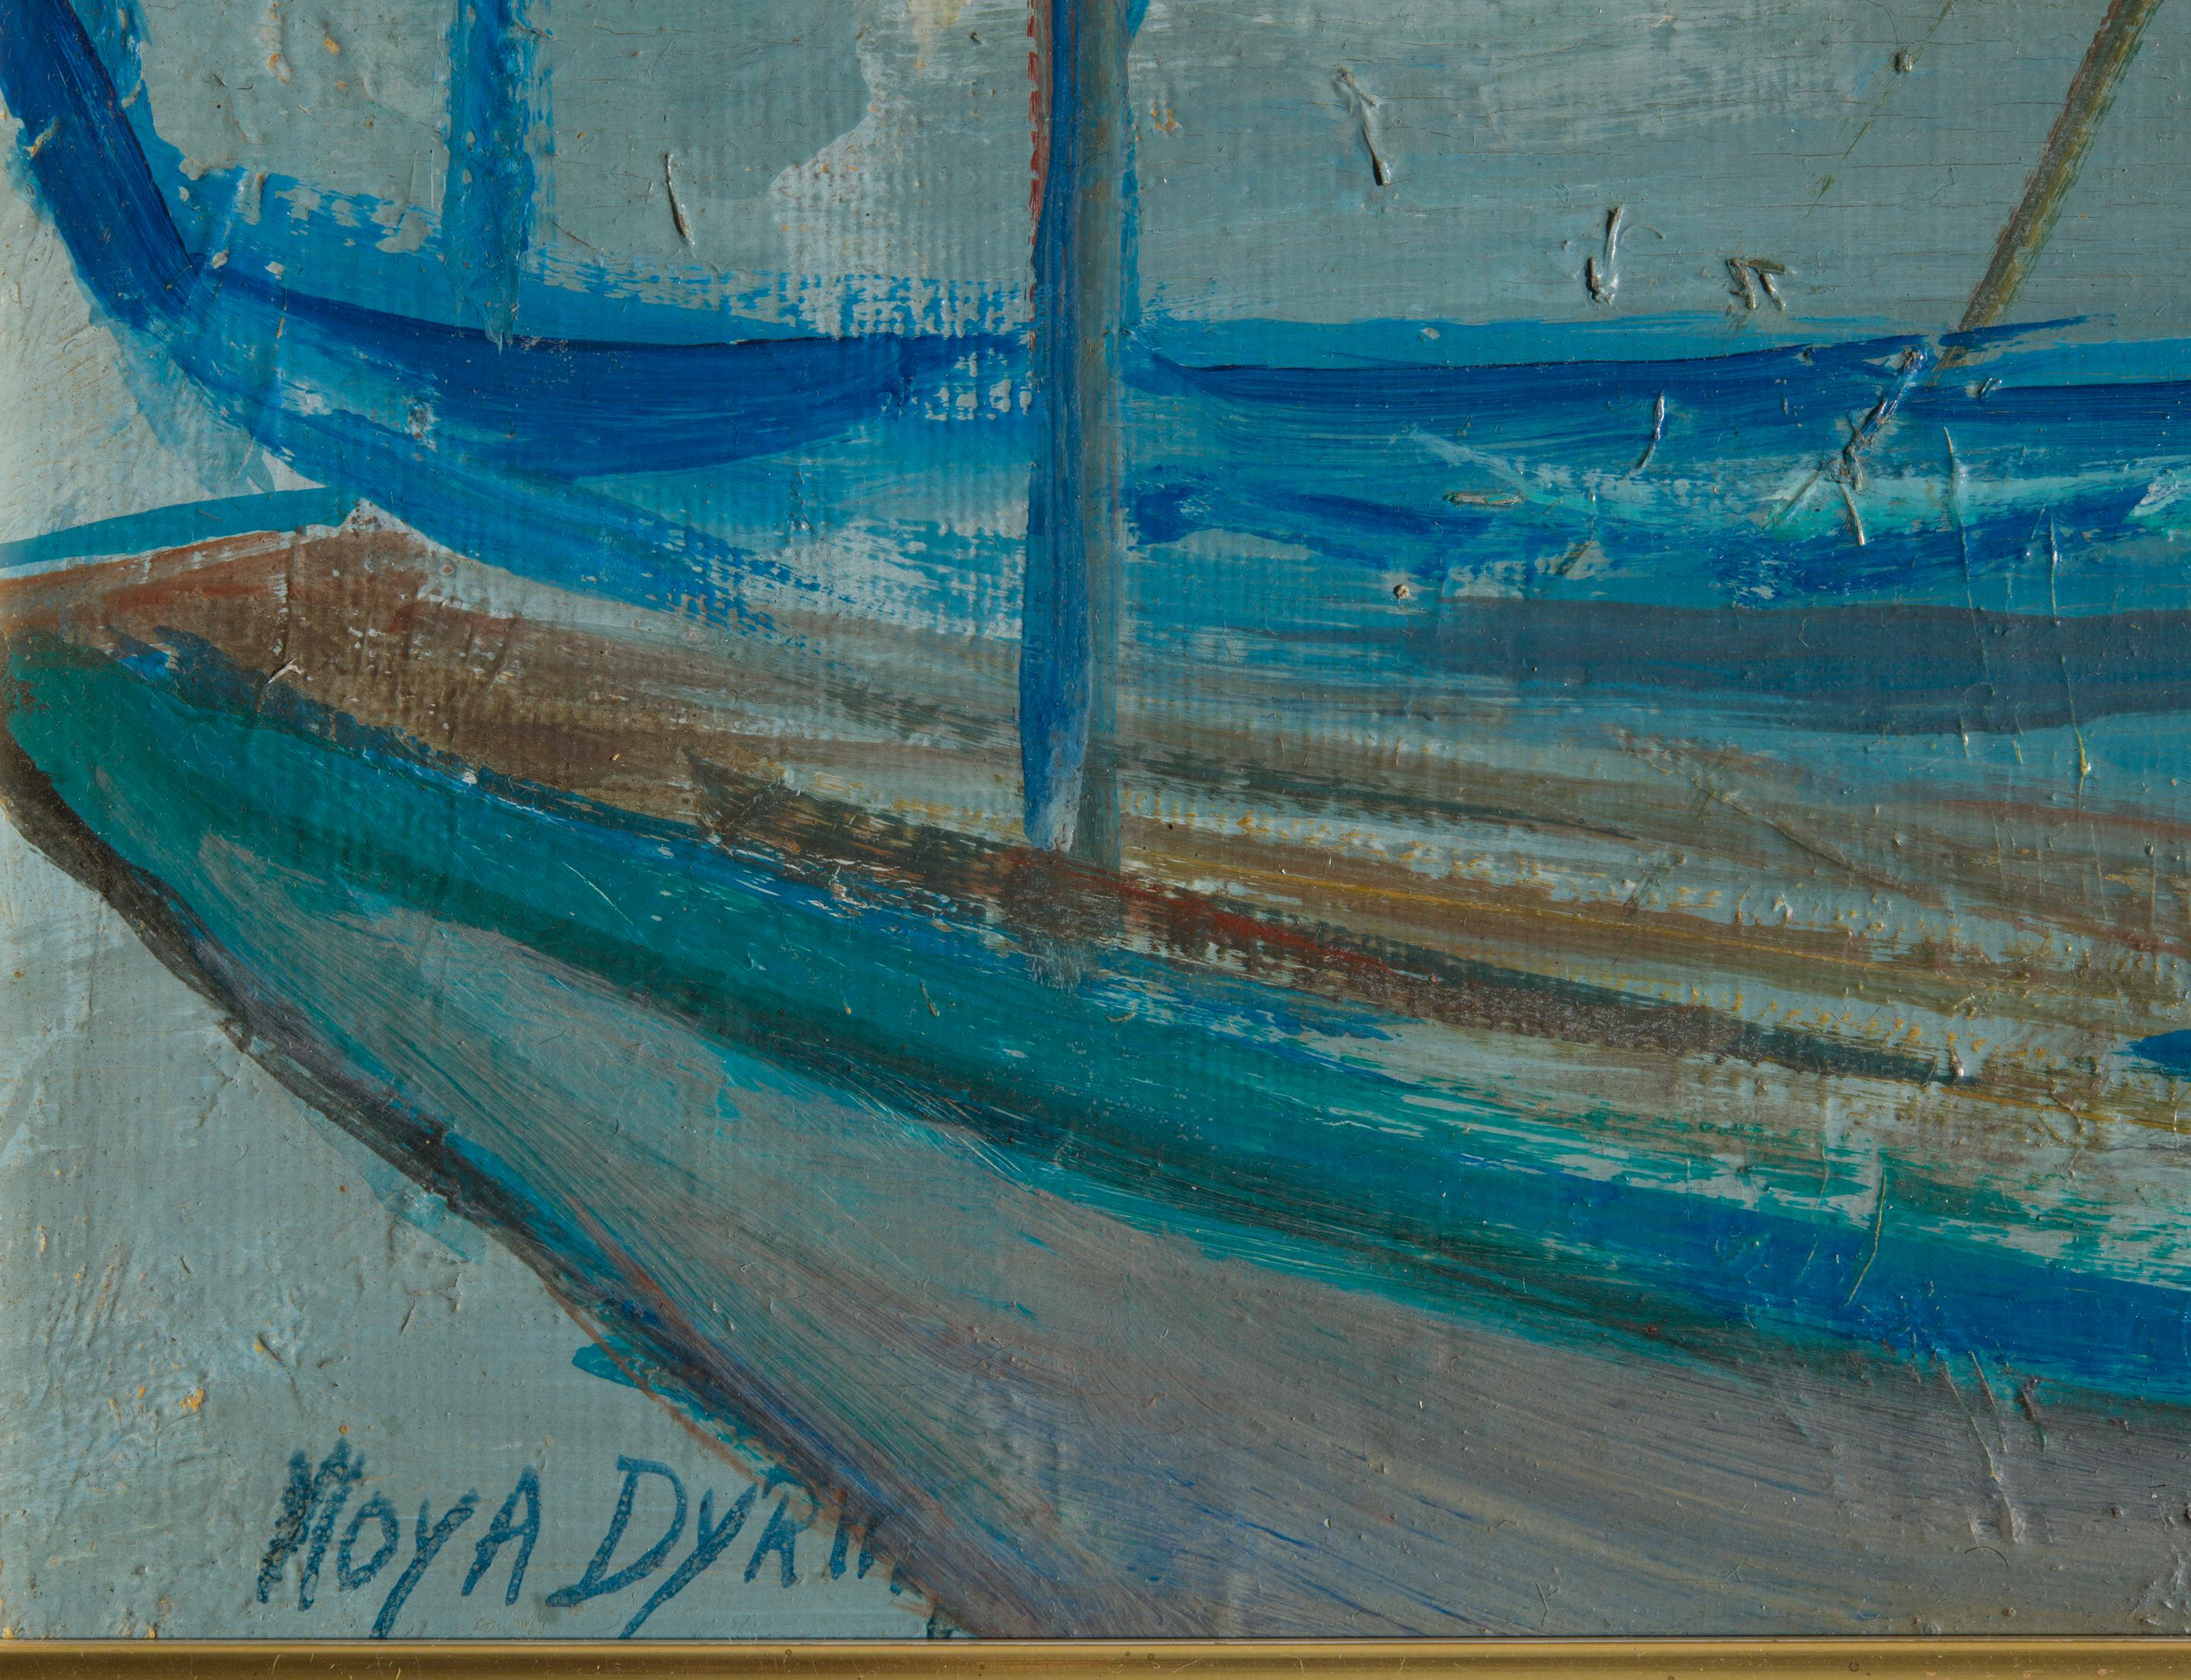 Magnifique peinture à l'huile évocatrice de la grande artiste moderne de l'école française Moya Dyring, spécialisée dans les marinas.
Elle représente un port avec des bateaux probablement de la Côte d'Azur, peints avec une grande intensité mais